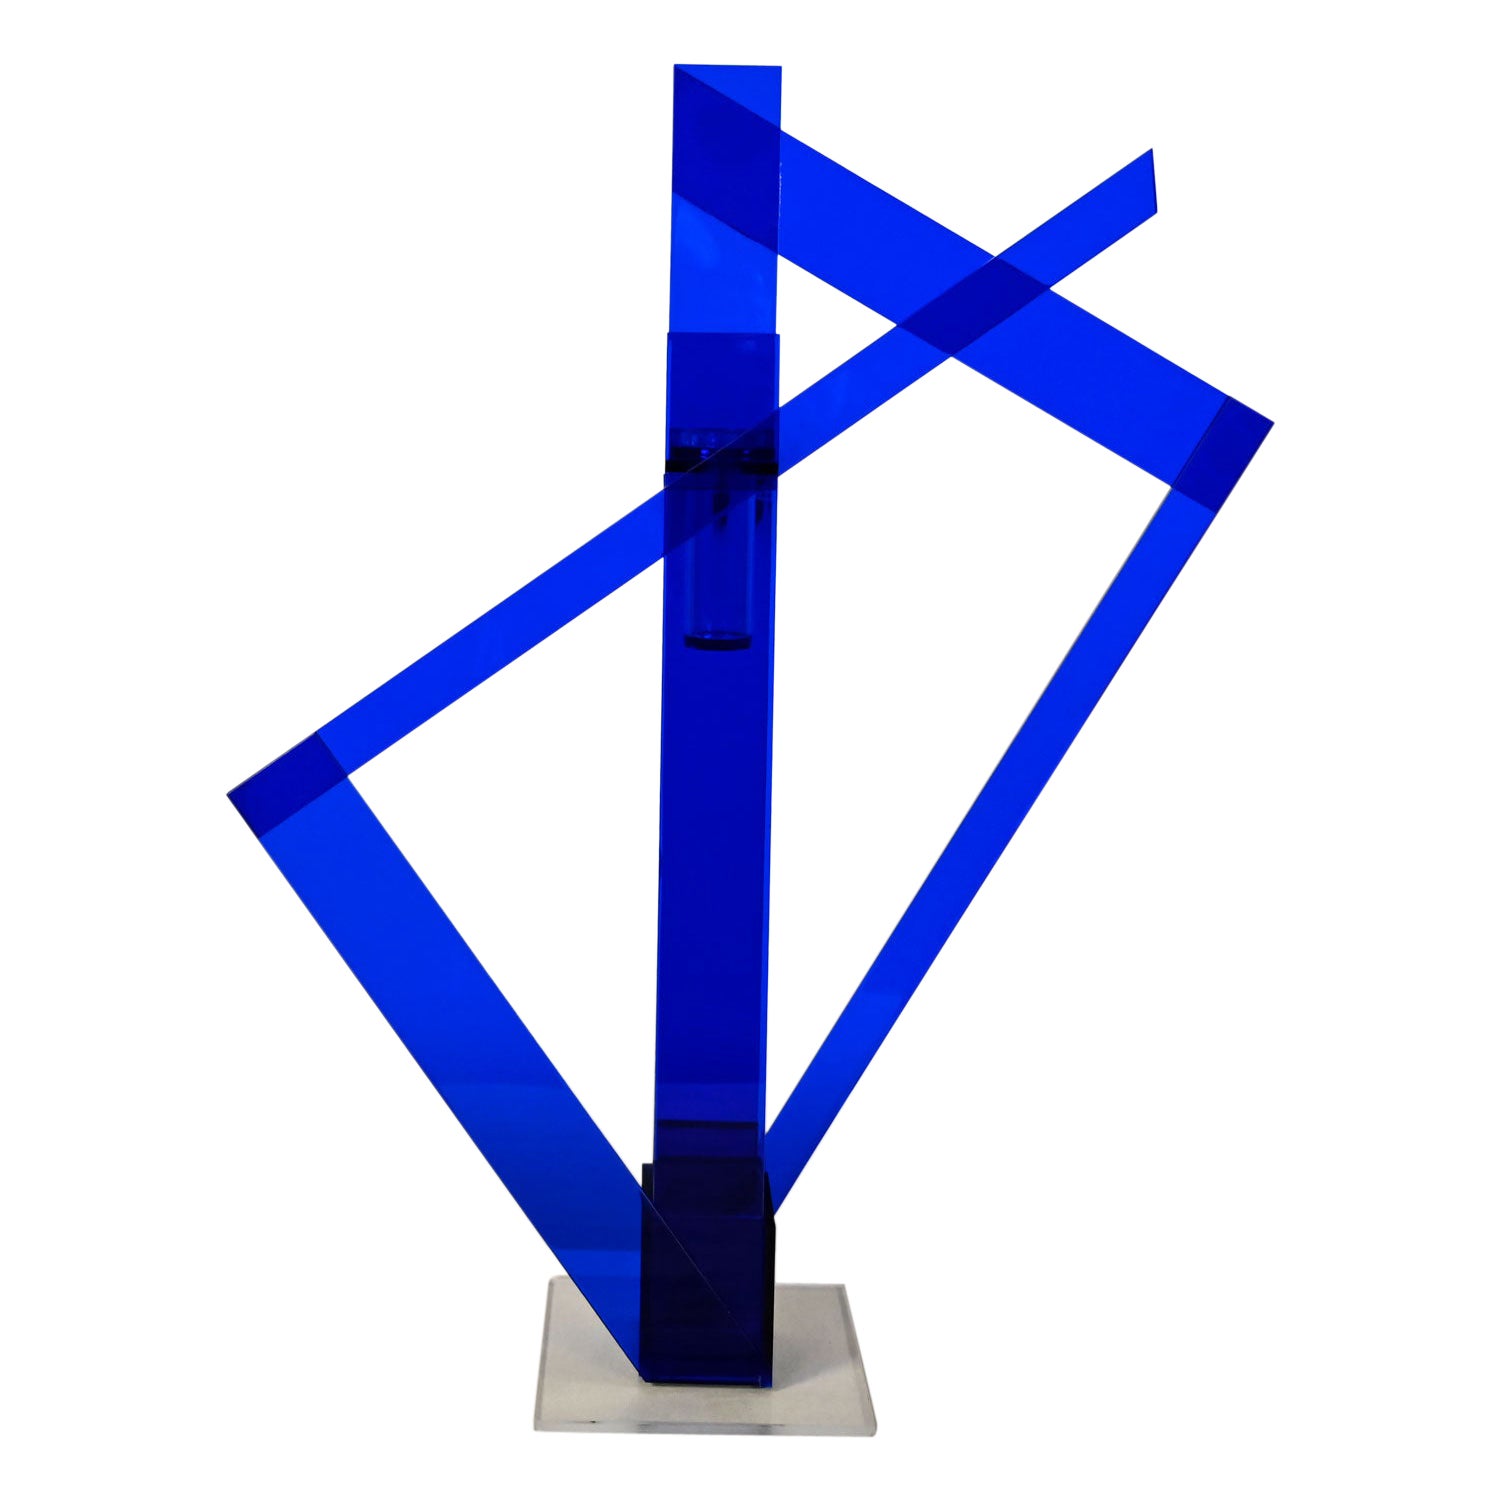 Jarrón o escultura abstracta posmoderna de plexiglás azul cobalto